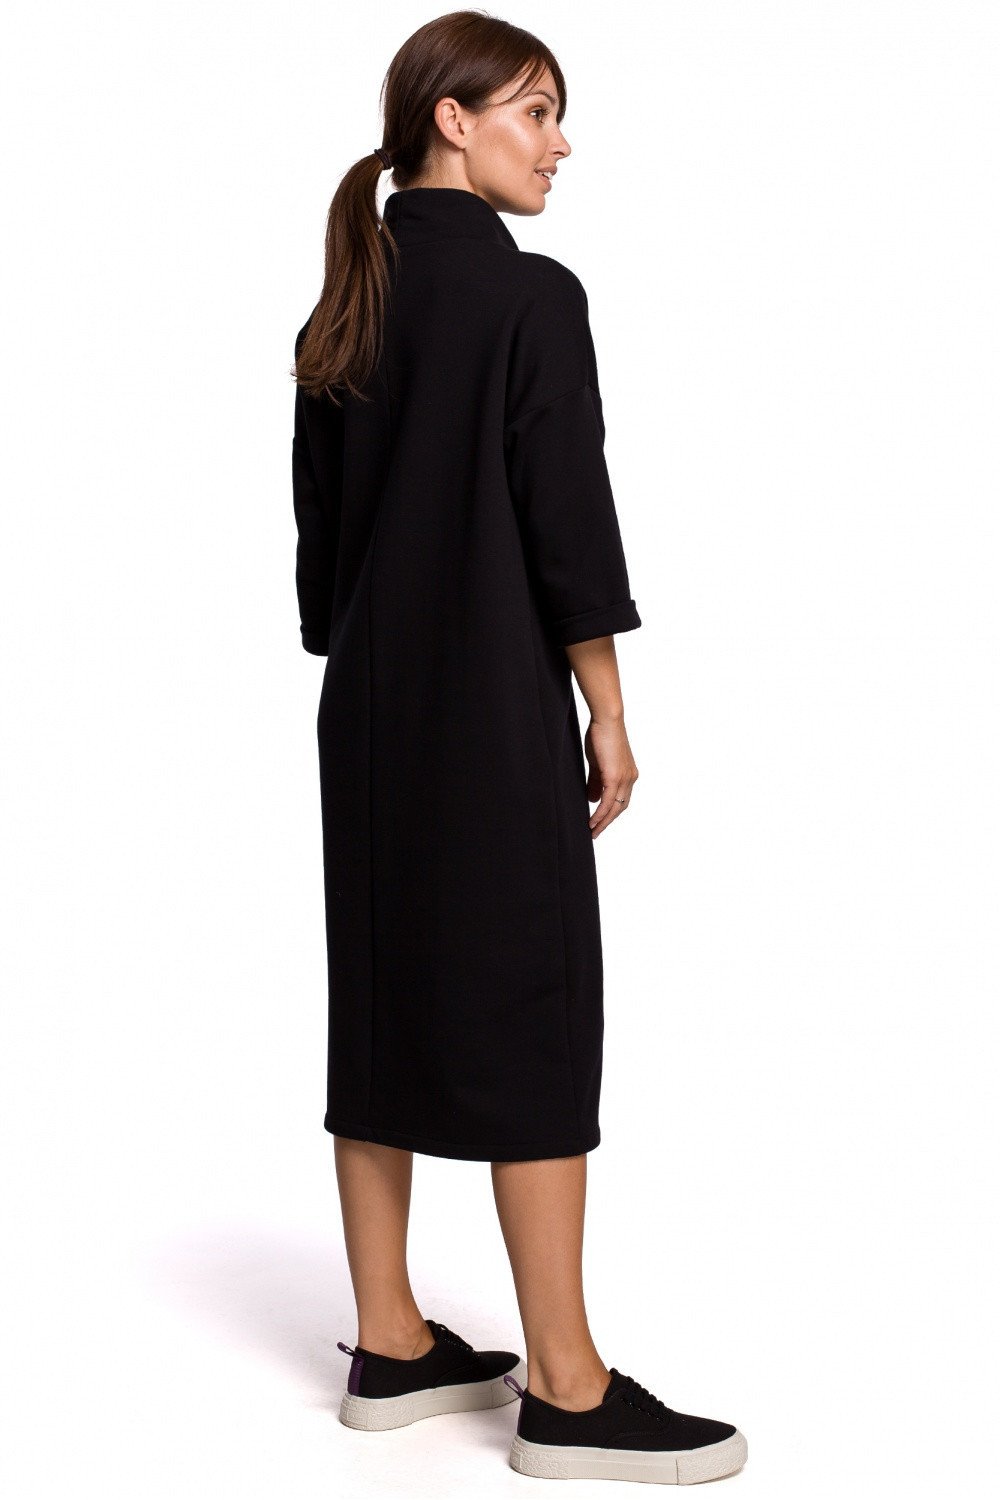 Dámské šaty model 17688377 - BeWear Velikost: S/M, Barvy: černá